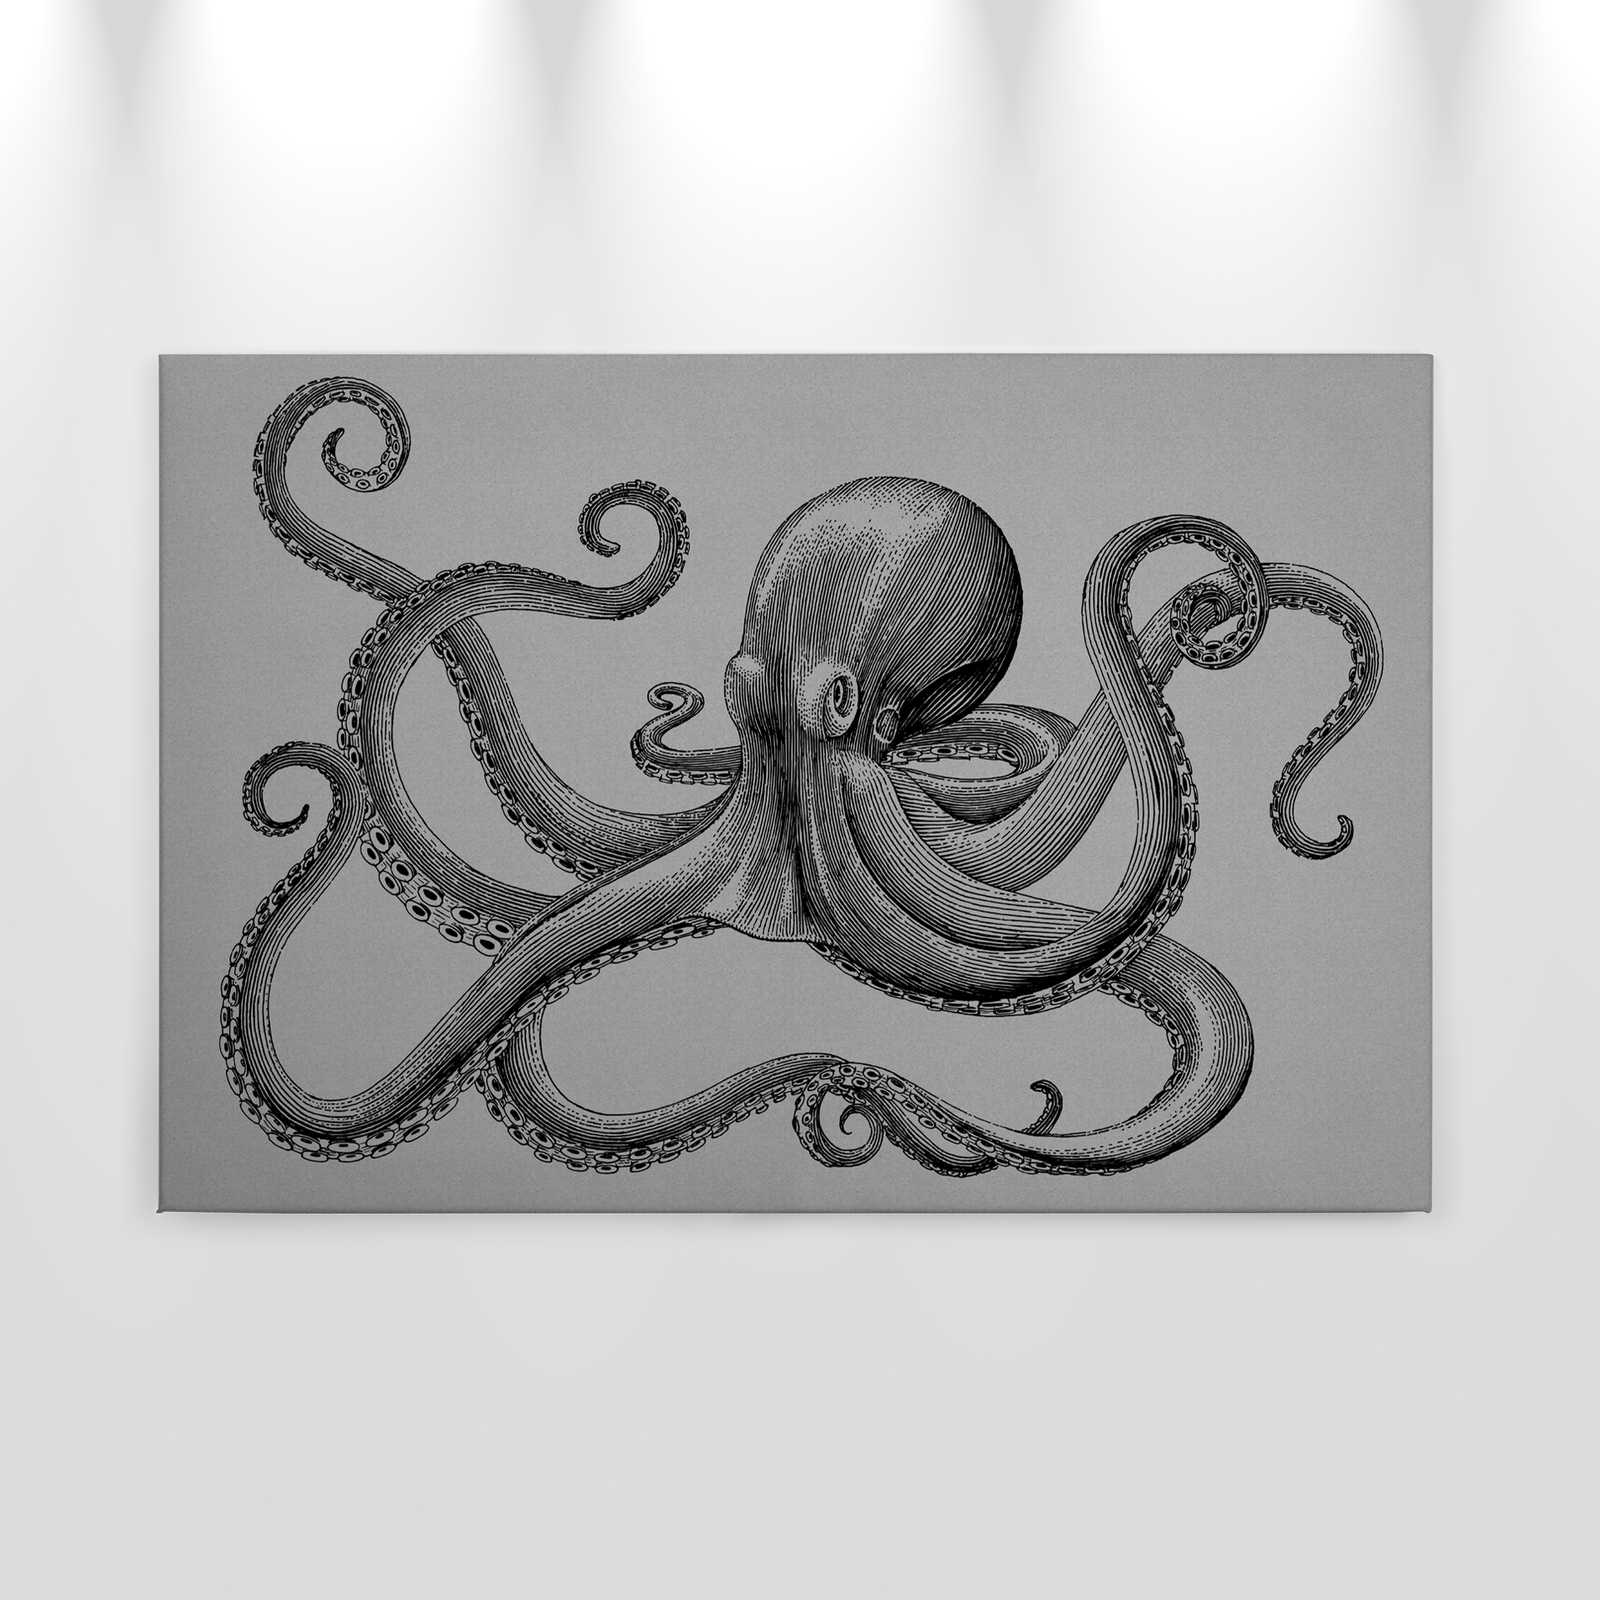             Jules 2 - modern octopus canvas schilderij in kartonnen structuur in tekenstijl - 0.90 m x 0.60 m
        